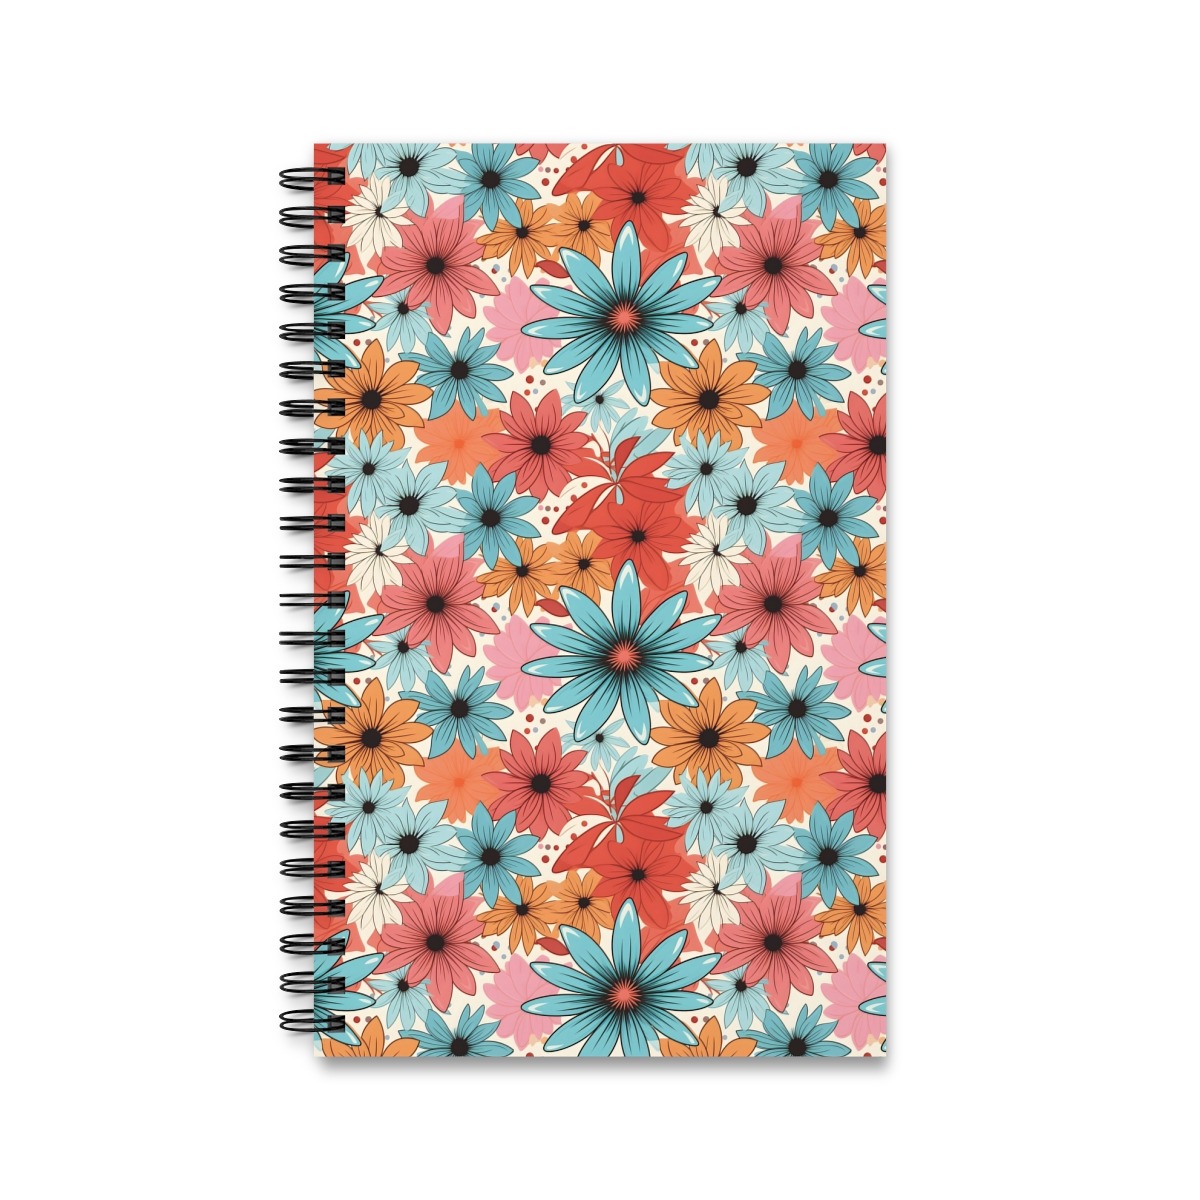 Aquarell Notizbuch mit buntem Blumenmuster - Ringbindung